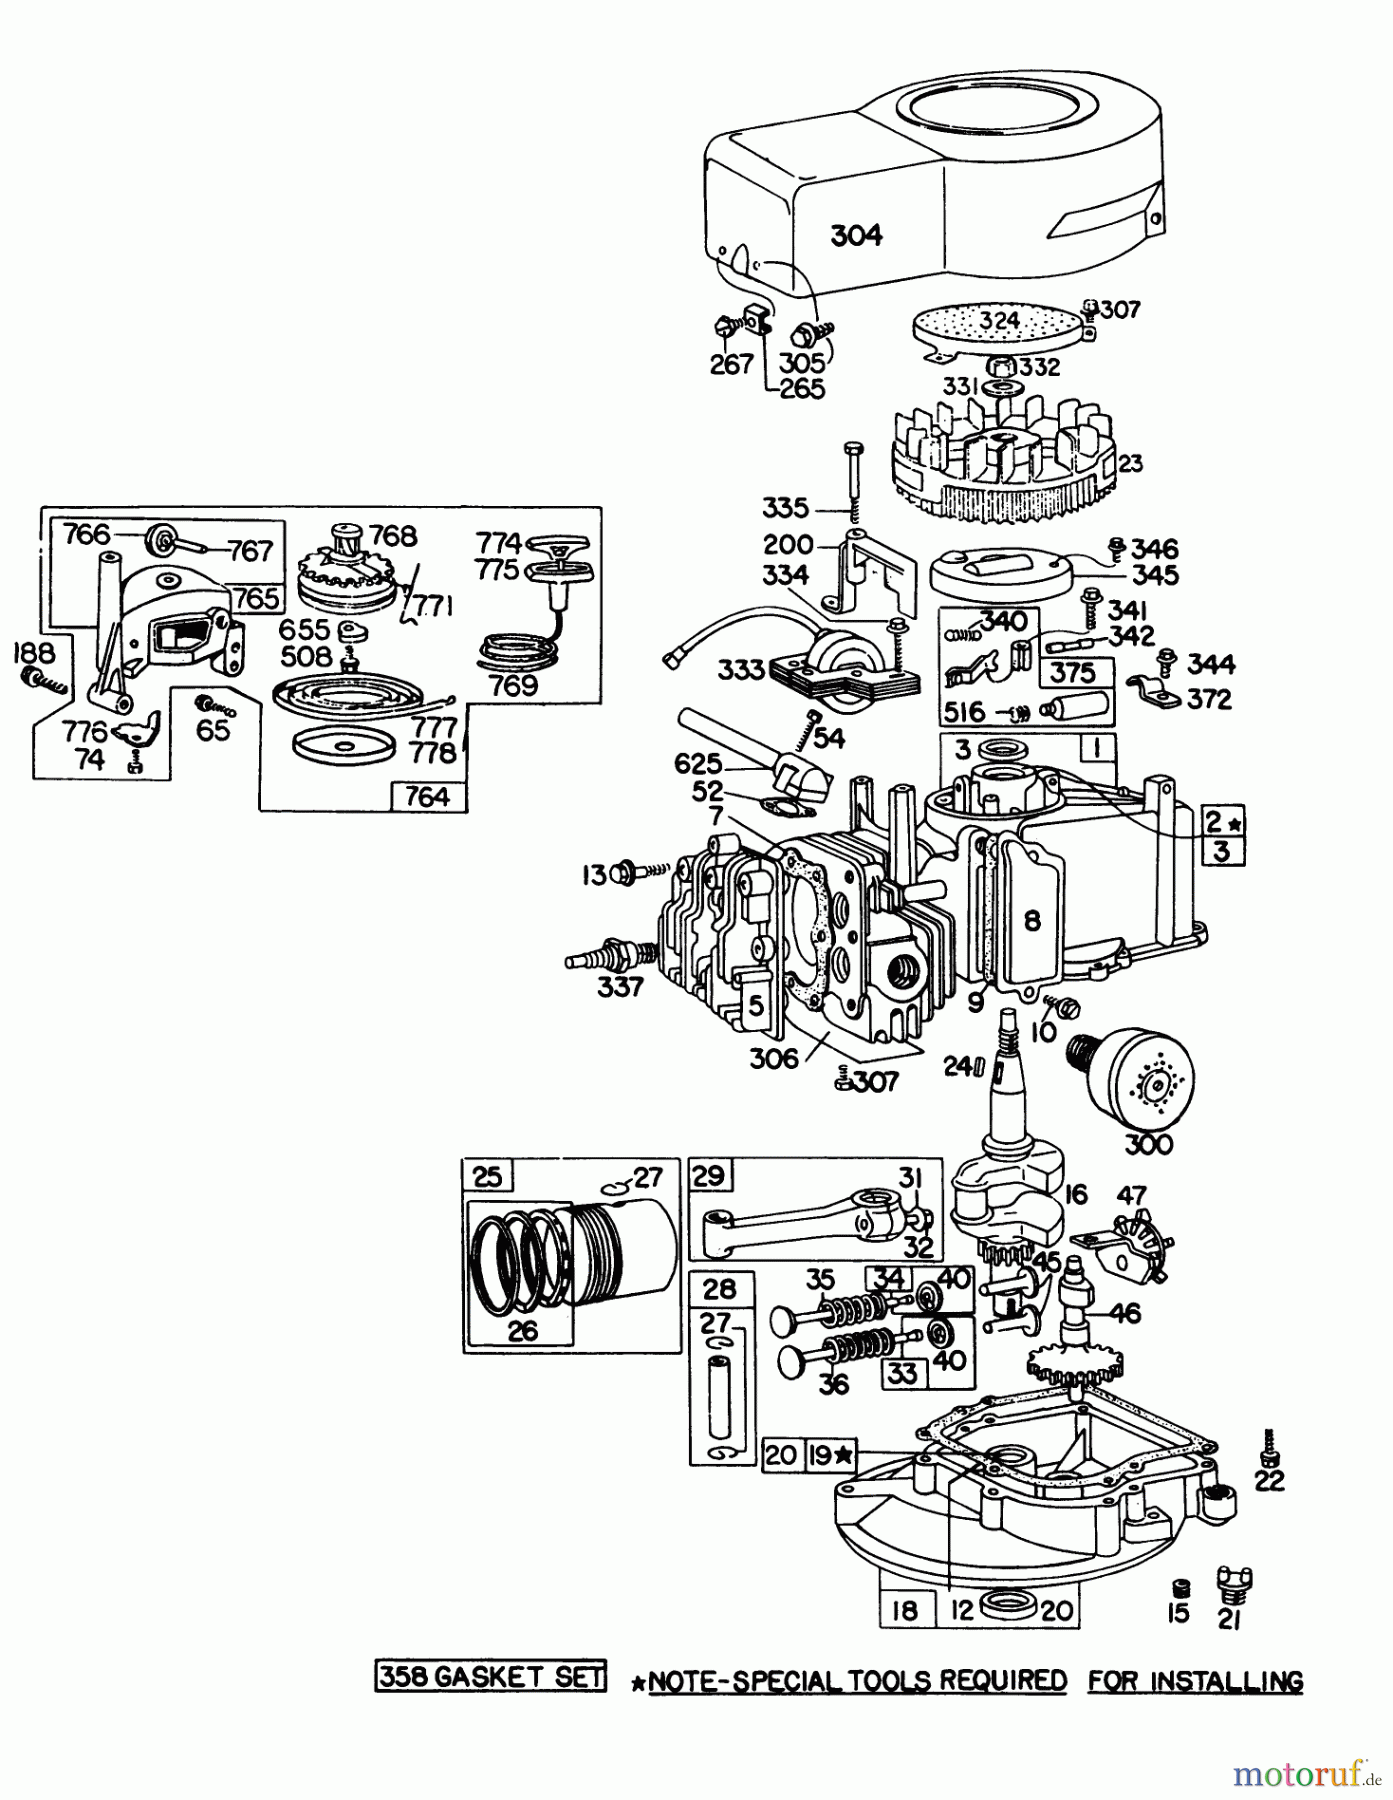  Toro Neu Mowers, Walk-Behind Seite 1 16113 - Toro Whirlwind II Lawnmower, 1977 (7000001-7999999) ENGINE BRIGGS & STRATTON MODEL 92908-1743-01 FOR 21